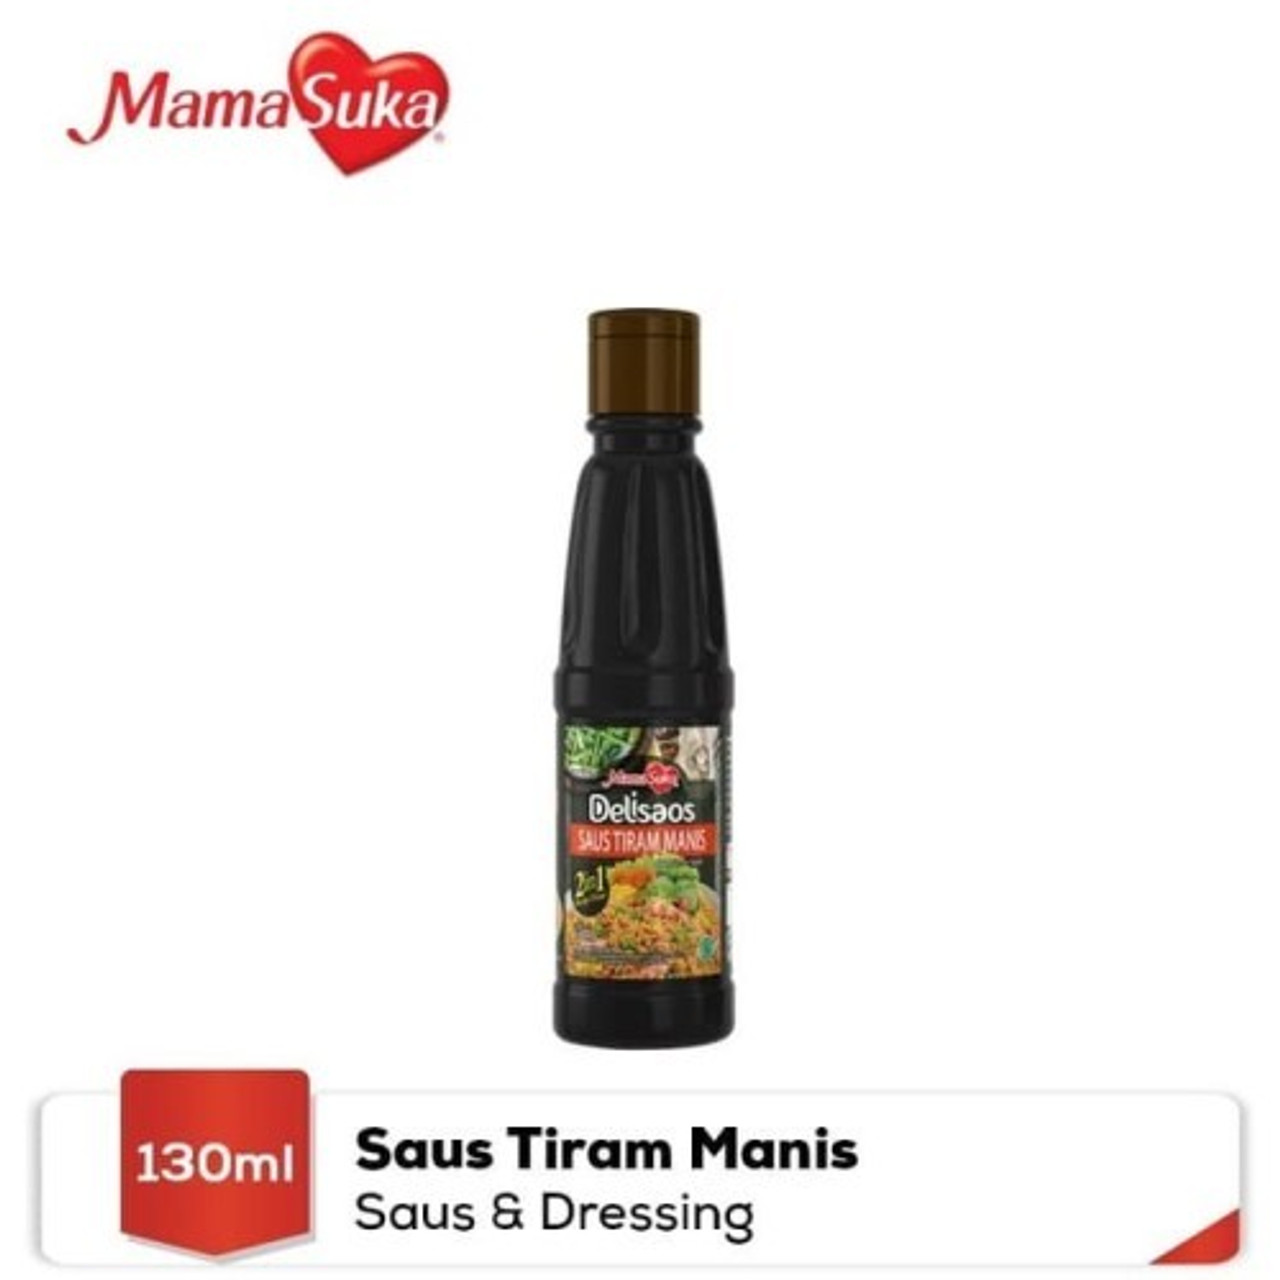 Mamasuka Delisaos Saus Tiram Manis, 130 ml